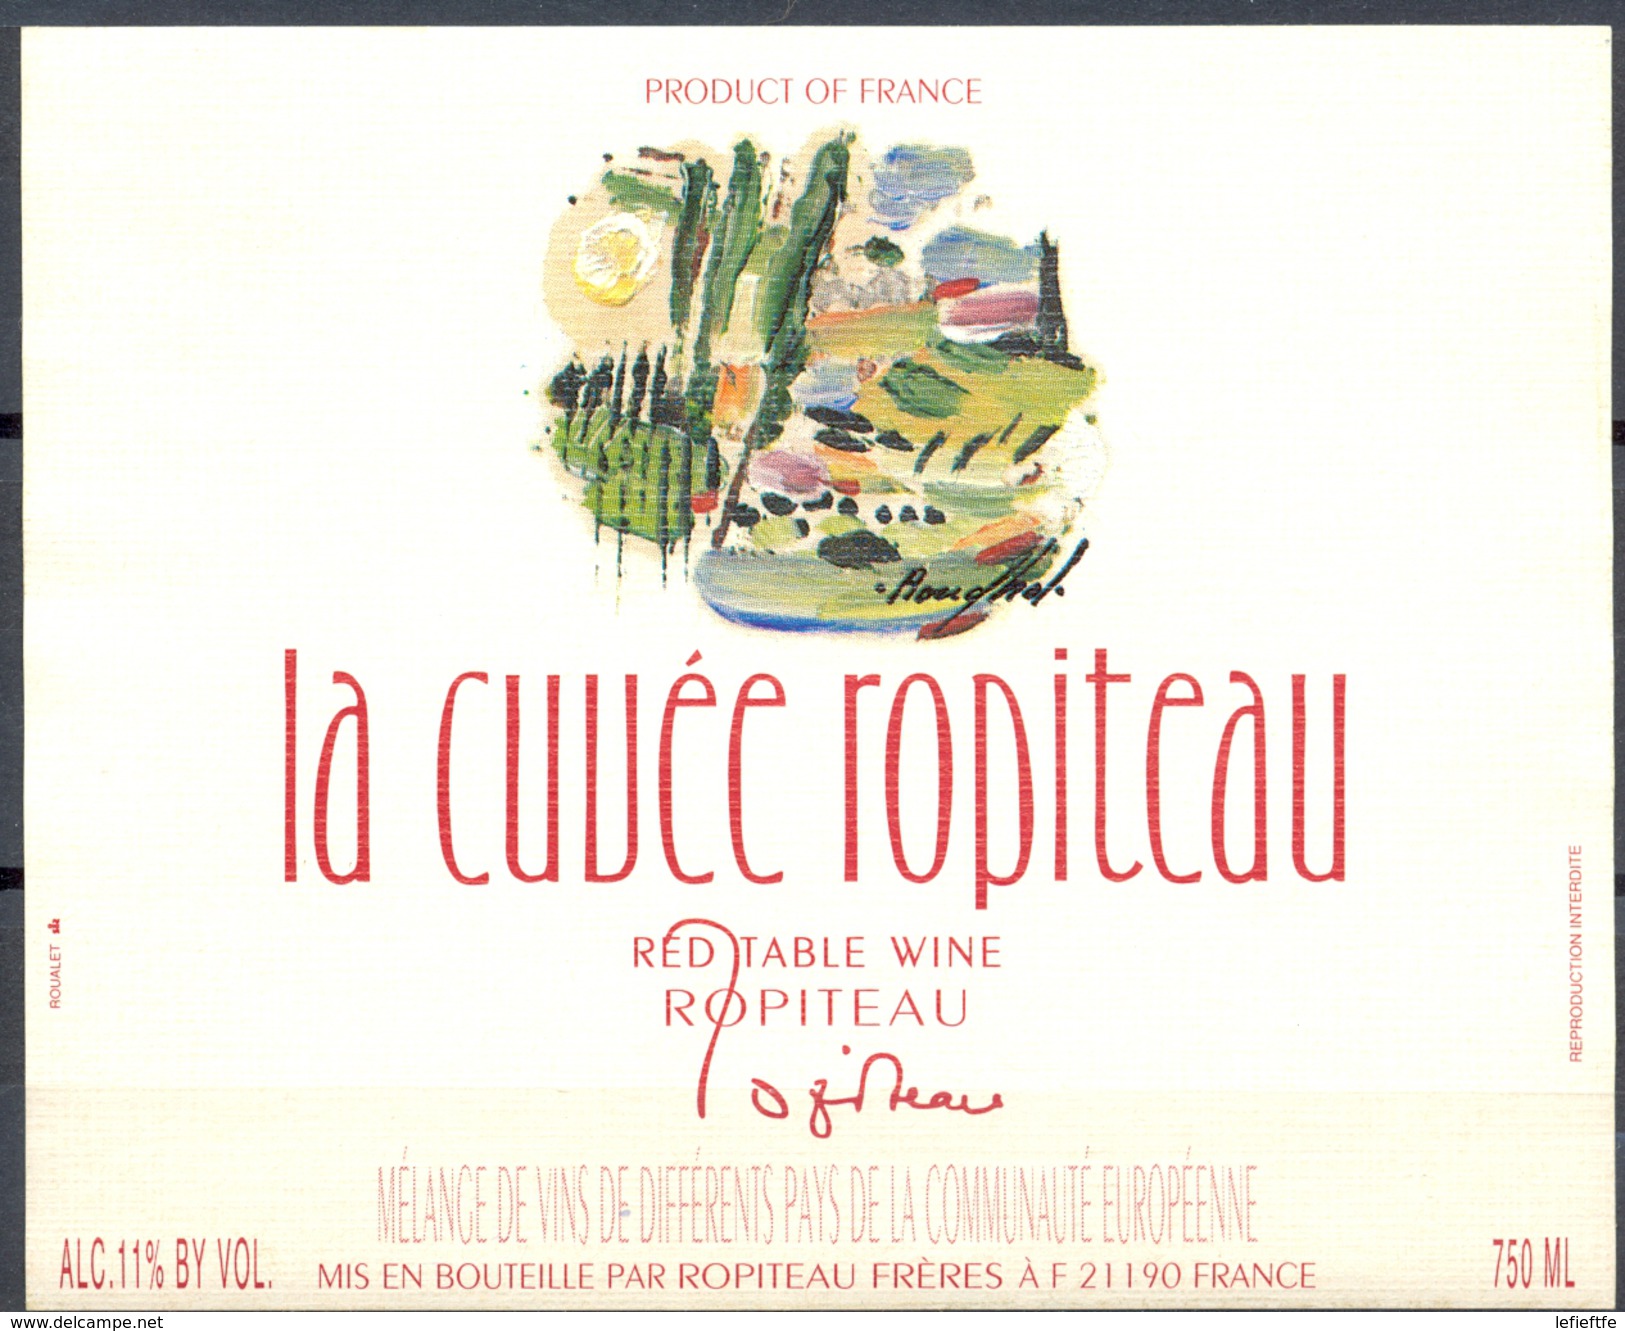 057 - La Cuvée Ropiteau  - Red Table Wine - Mélange De Différents Vins De La Communauté Europénne - Robiteau Frères - Rode Wijn